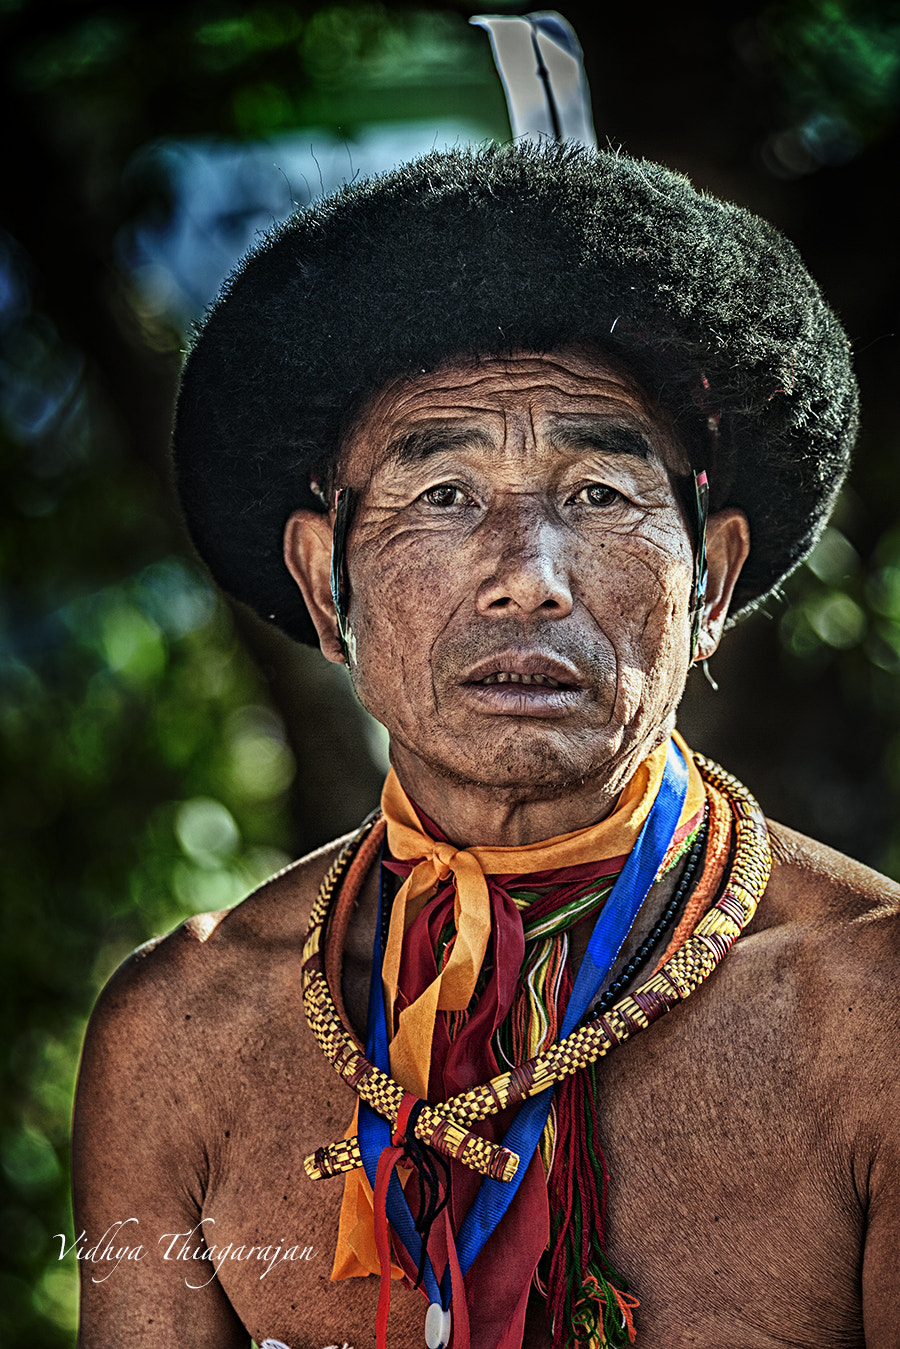 Nikon D700 + Nikon AF Nikkor 80-400mm F4.5-5.6D ED VR sample photo. Portrait of a tribesman photography